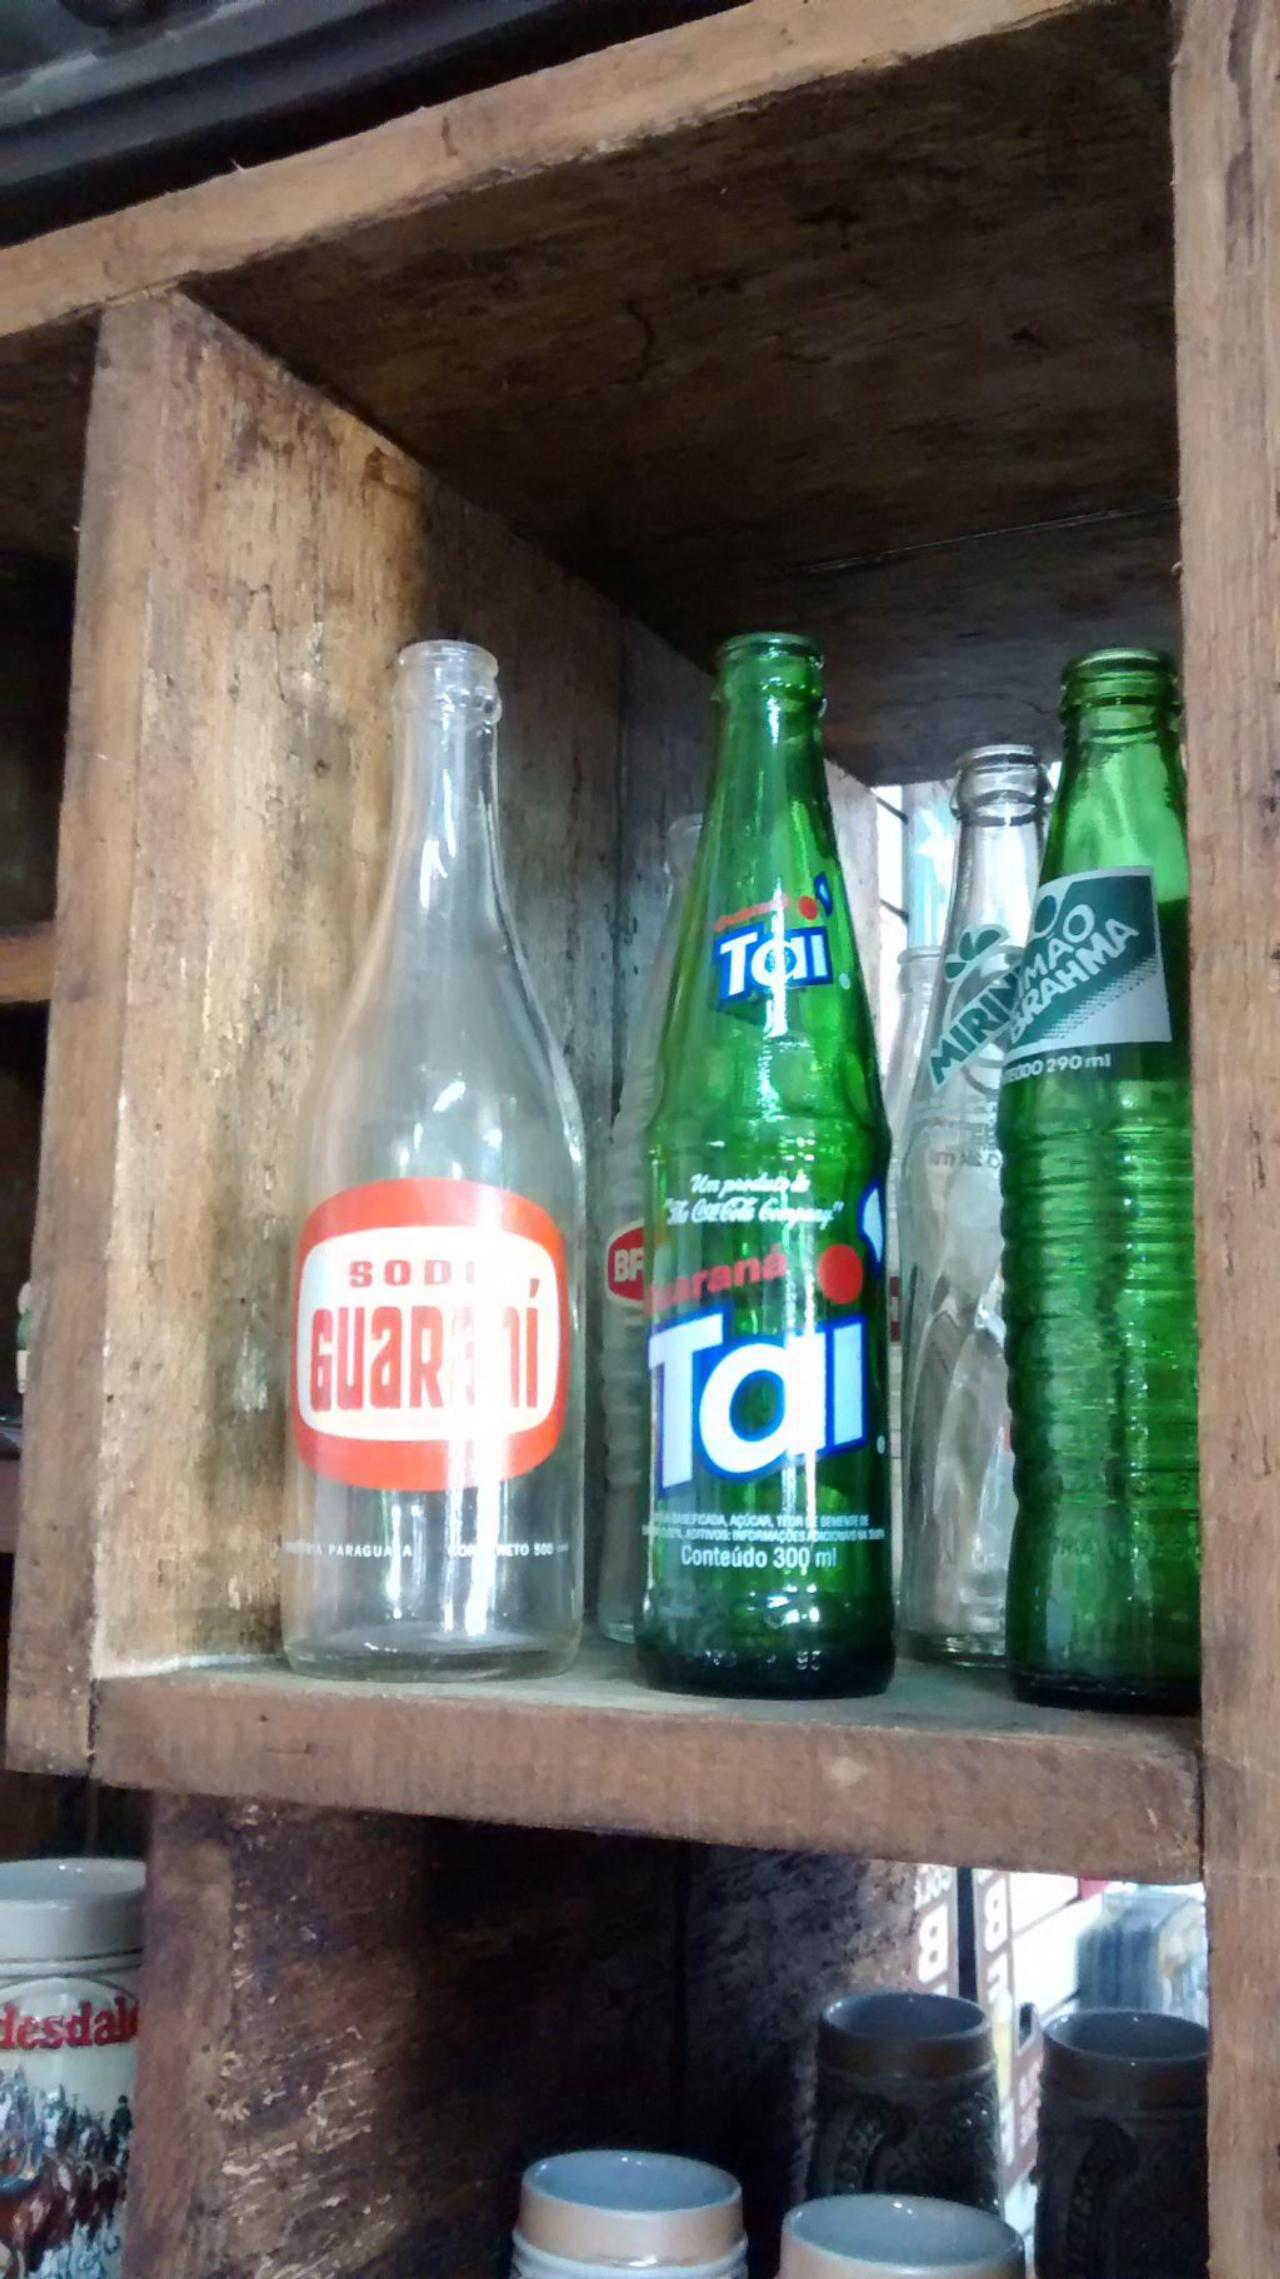 Garrafas vintage de bebidas de antigamente, com preços que variam de R$ 5 a R$ 40 no evento